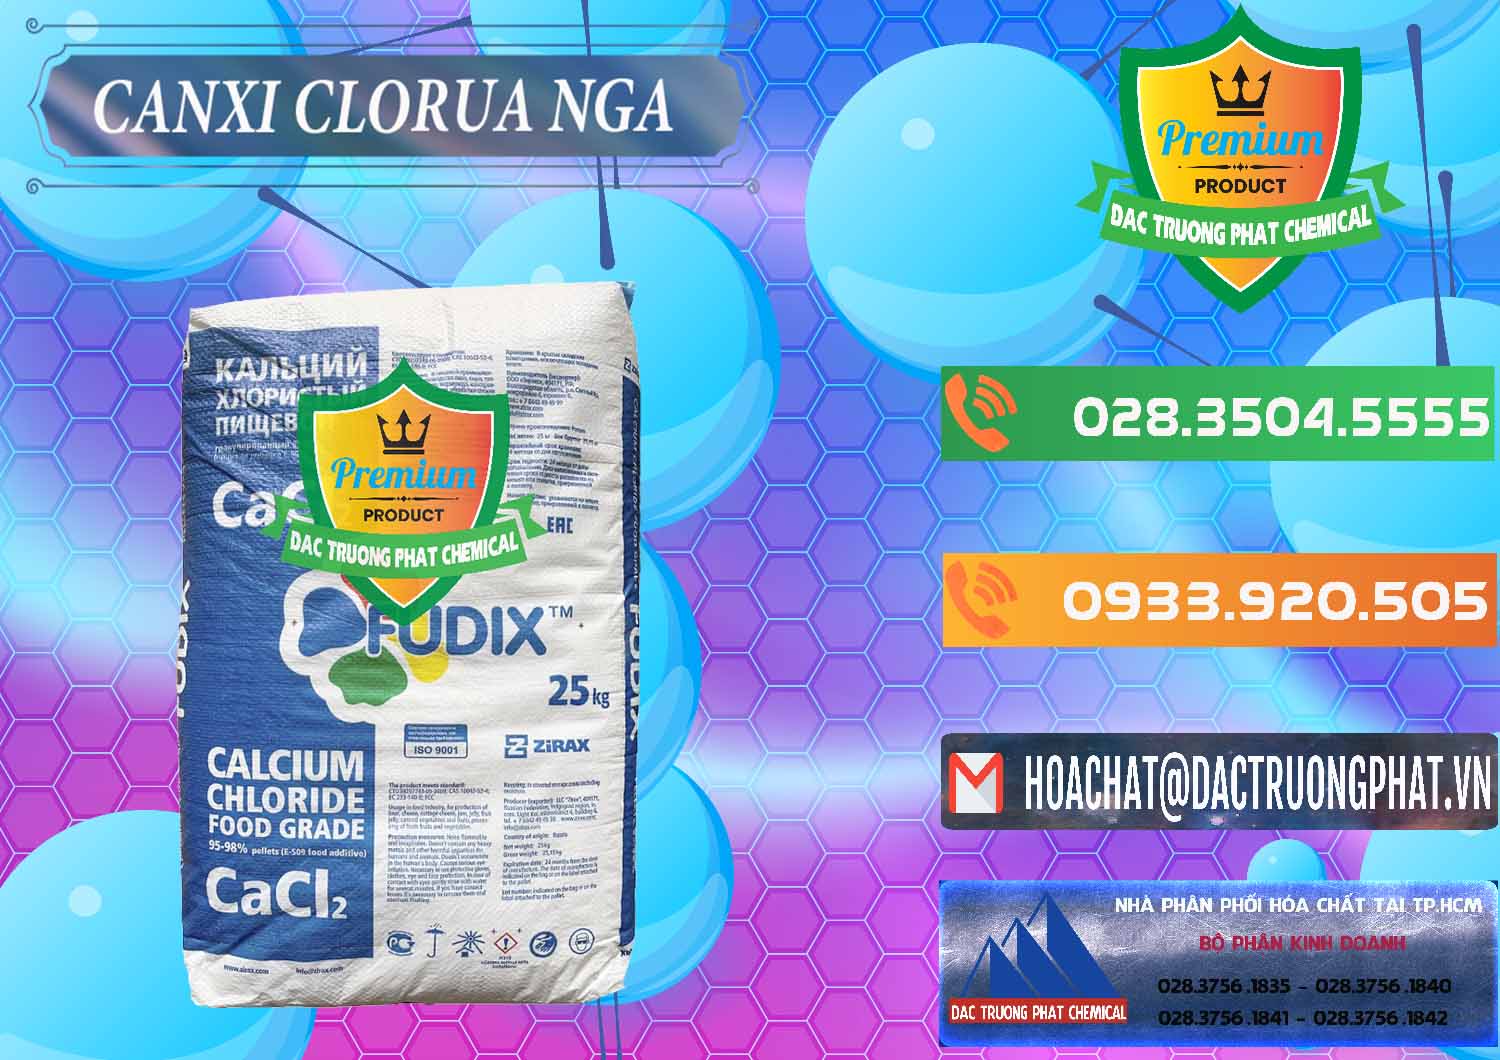 Chuyên bán ( cung cấp ) CaCl2 – Canxi Clorua Nga Russia - 0430 - Công ty chuyên bán _ cung cấp hóa chất tại TP.HCM - hoachatxulynuoc.com.vn